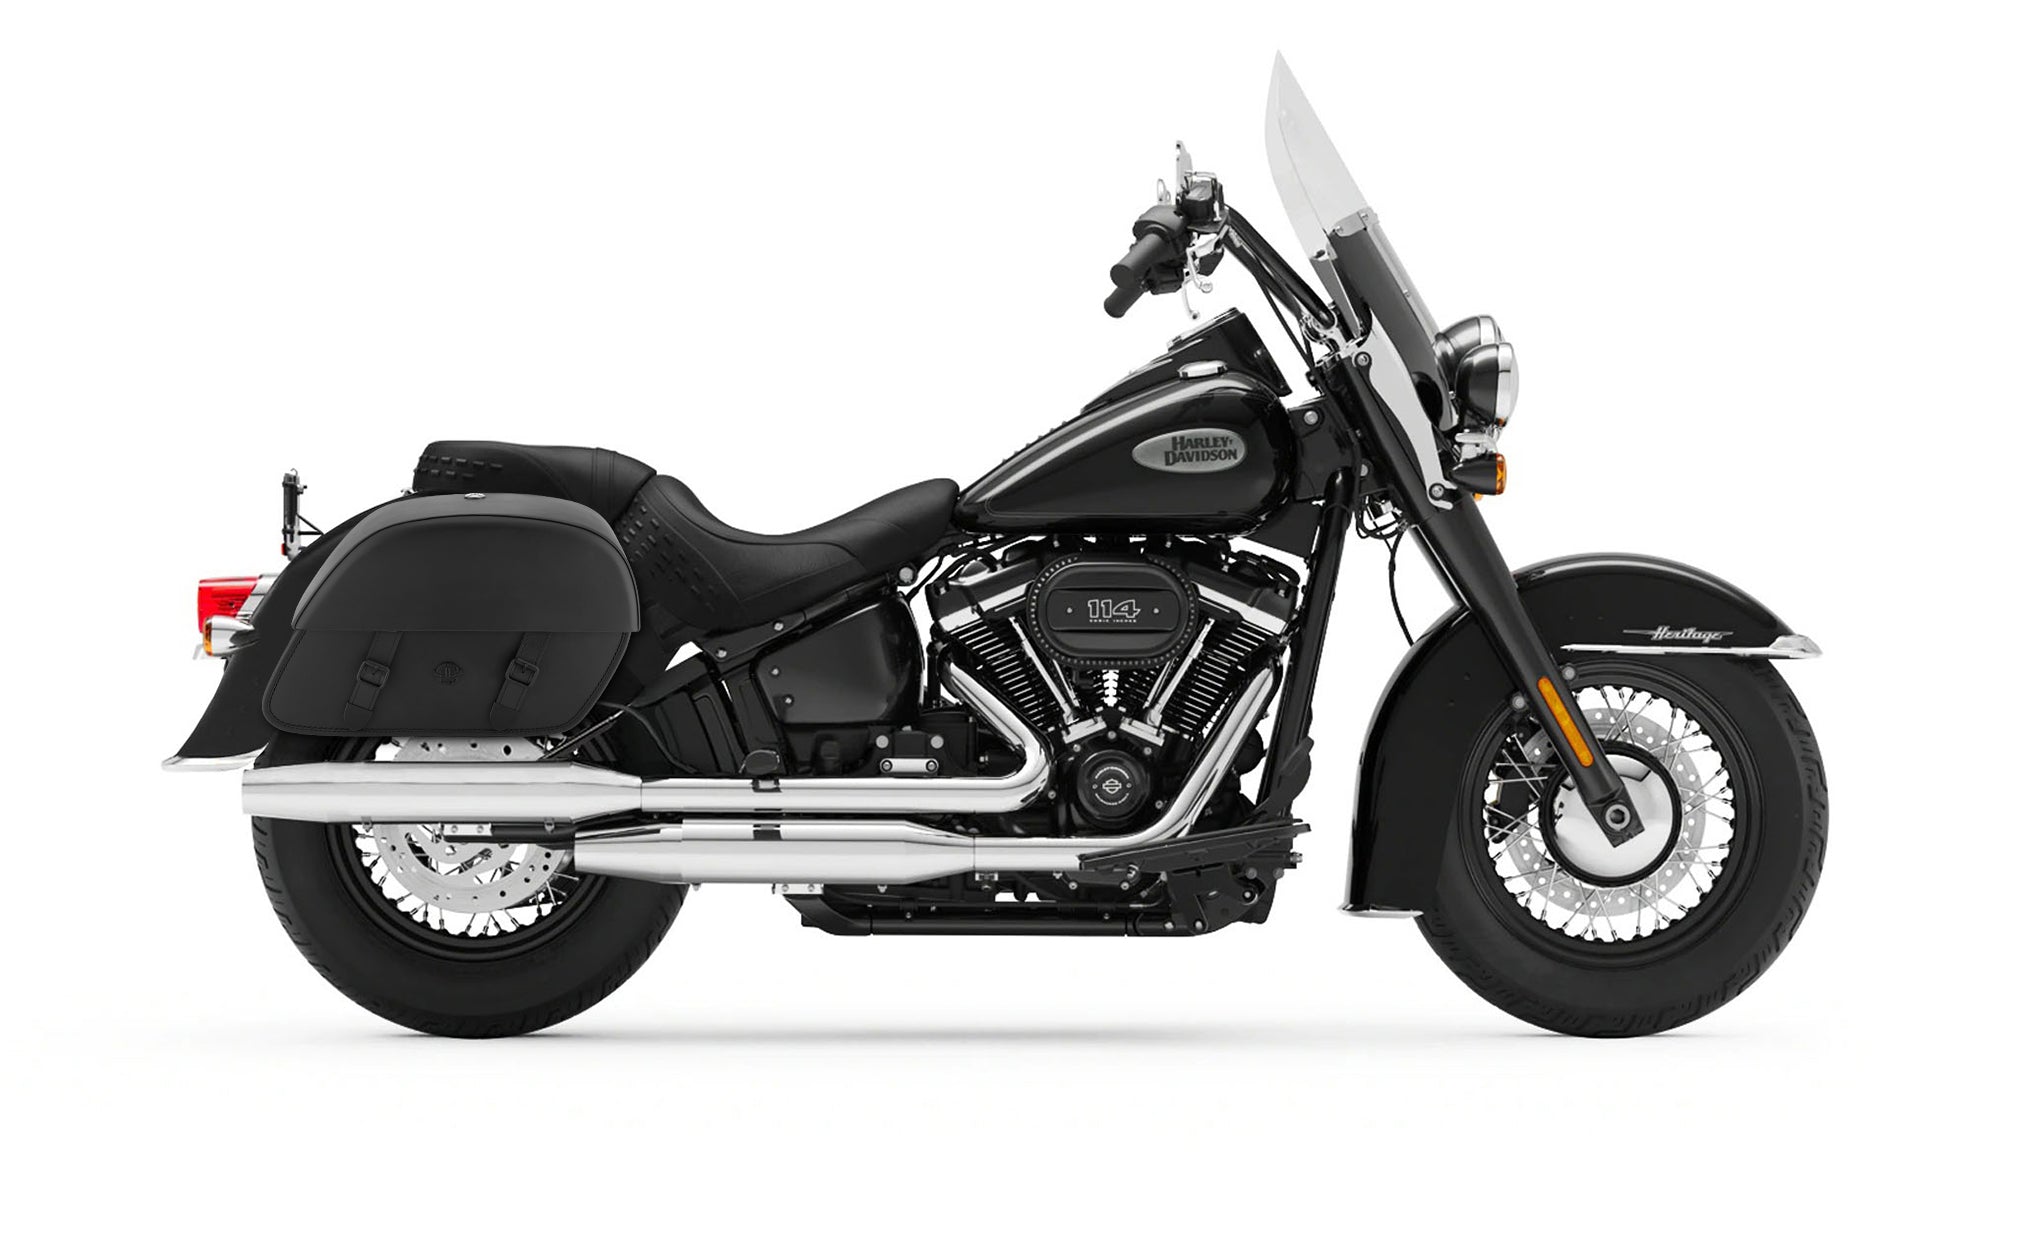 Viking Baelor Medium Leather Motorcycle Saddlebags For Harley Davidson Softail Heritage Flst I C Ci on Bike Photo @expand